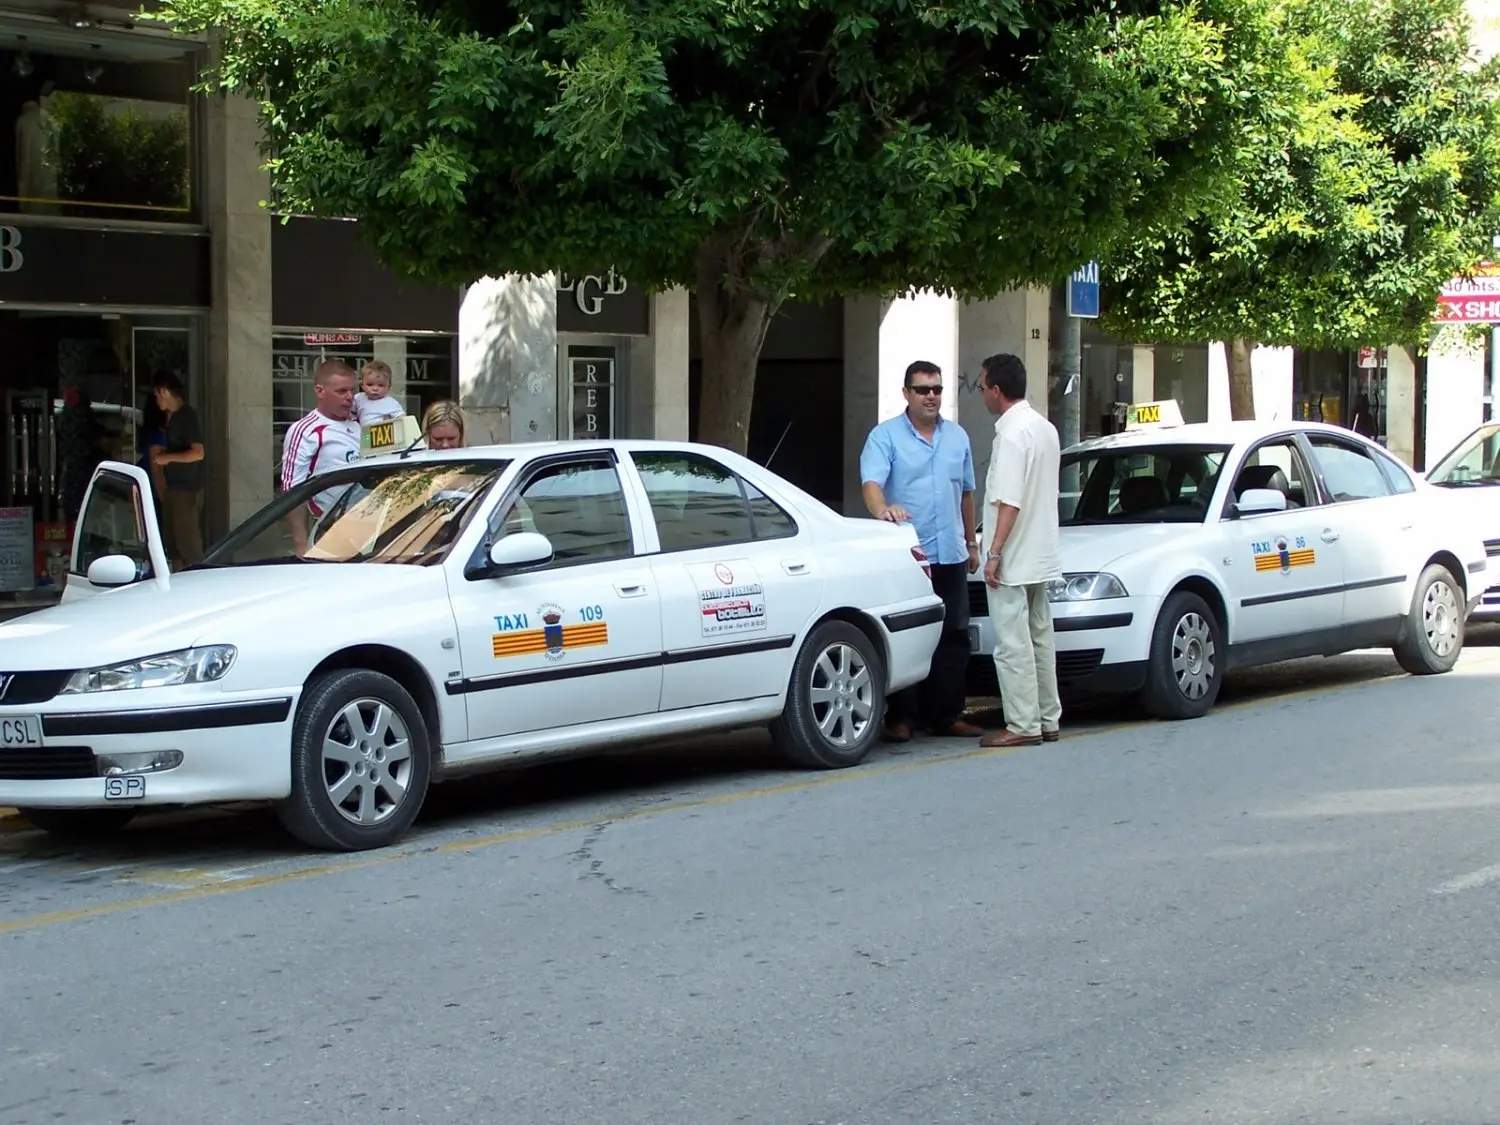 precio taxi aeropuerto ibiza a santa eulalia - Cuánto cuesta un taxi de San Antonio a Santa Eulalia